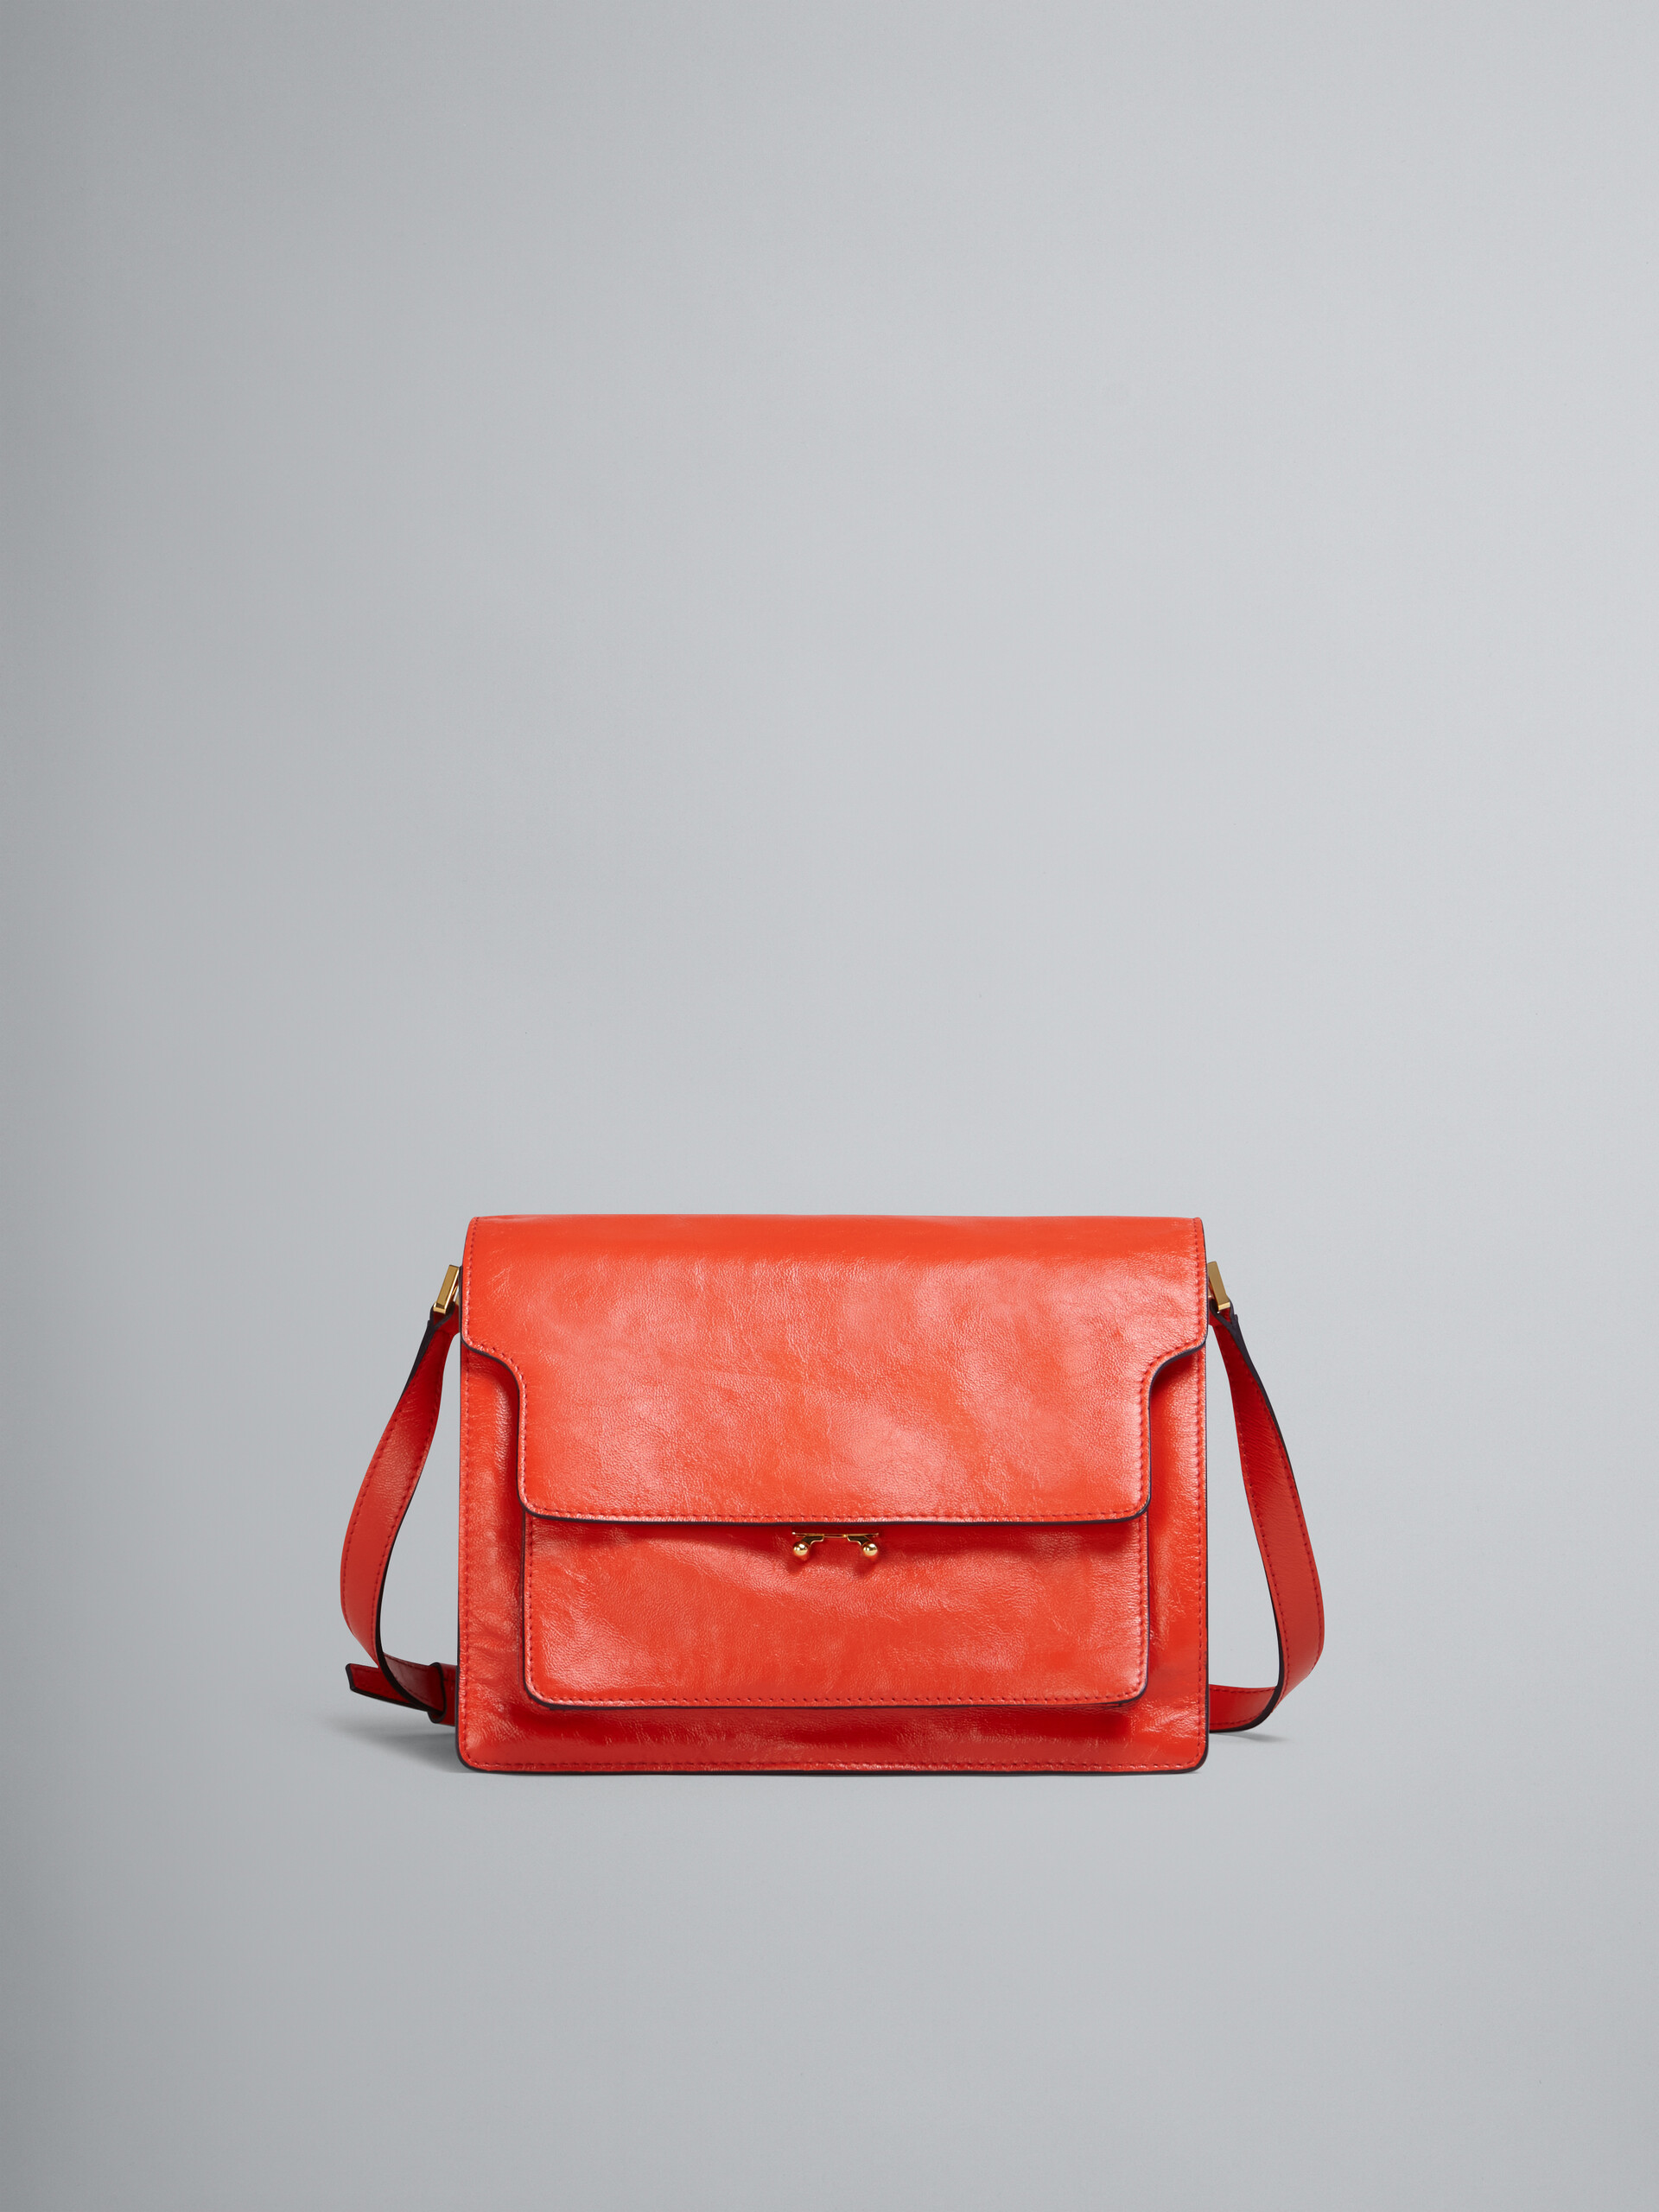 TRUNK SOFT large bag in orange leather - Shoulder Bag - Image 1